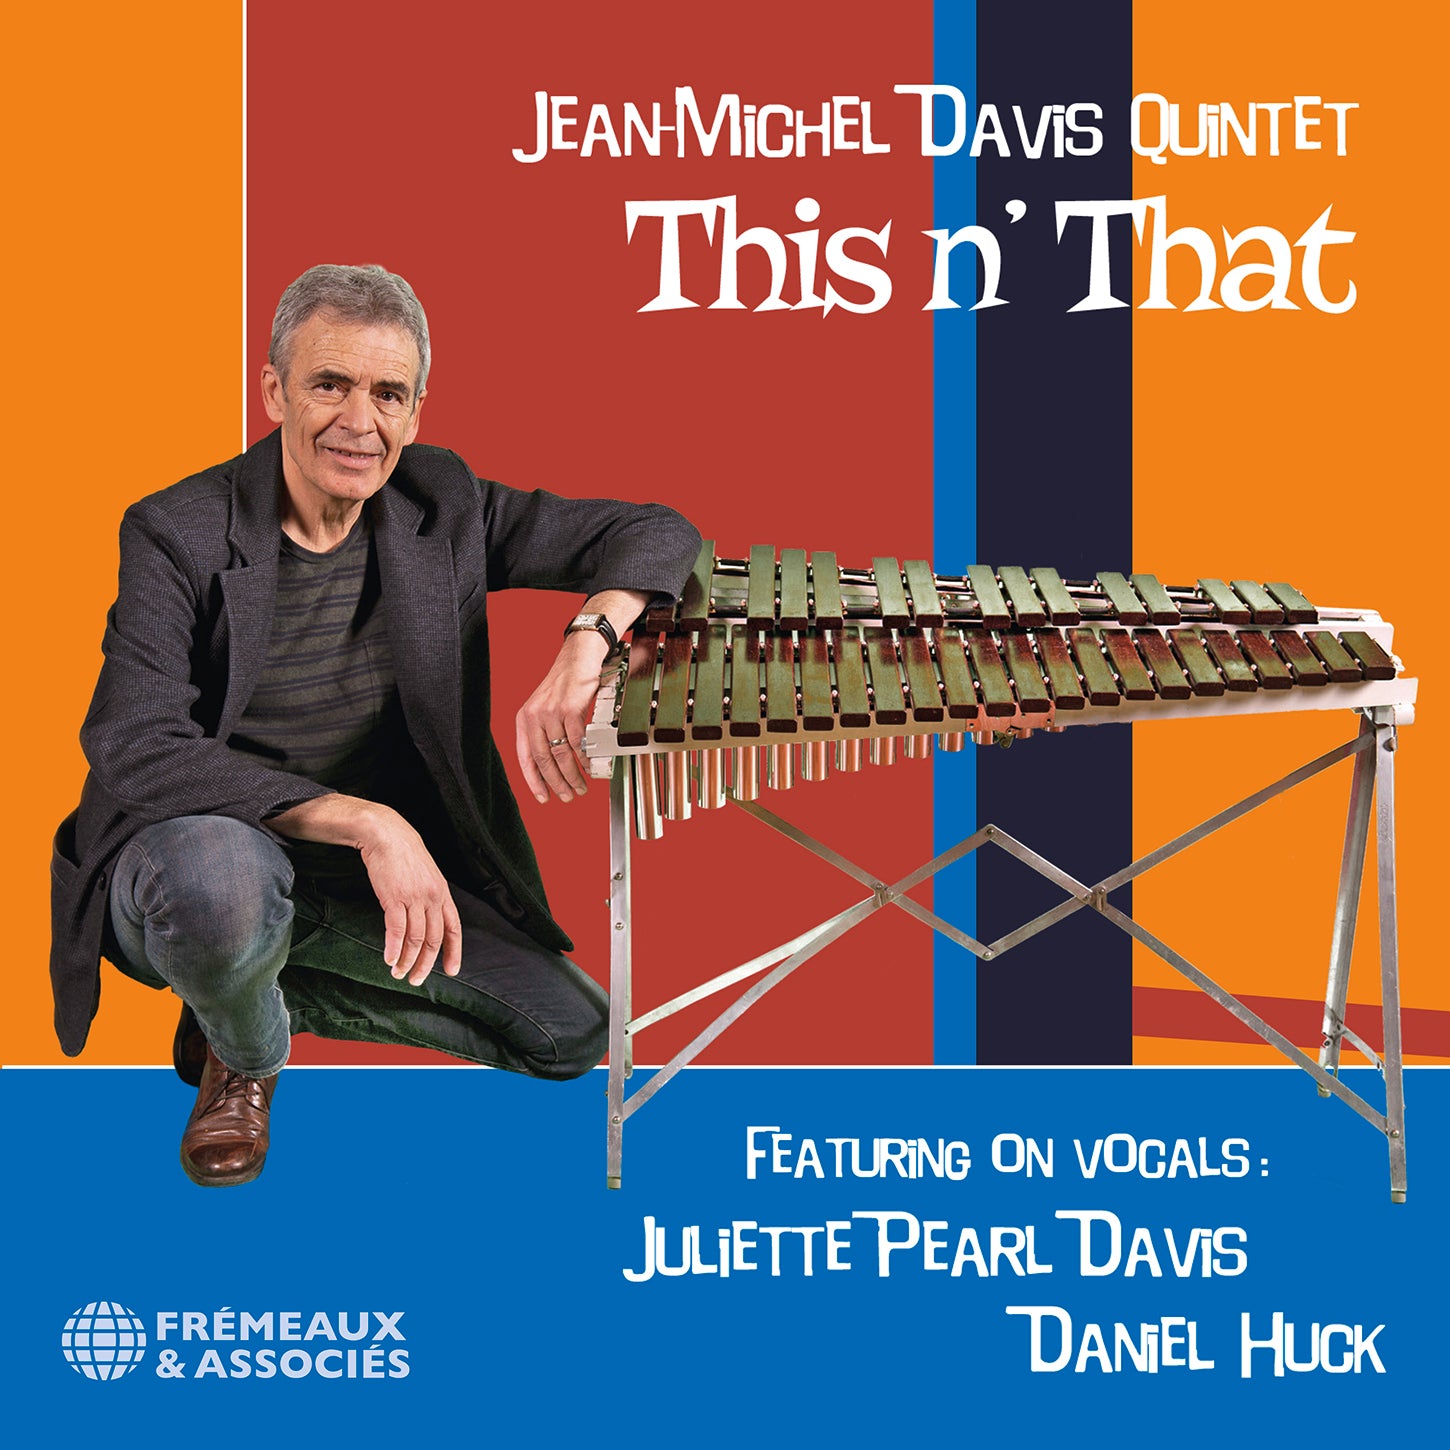 Jean-Michel Davis Quintet: This n’ That